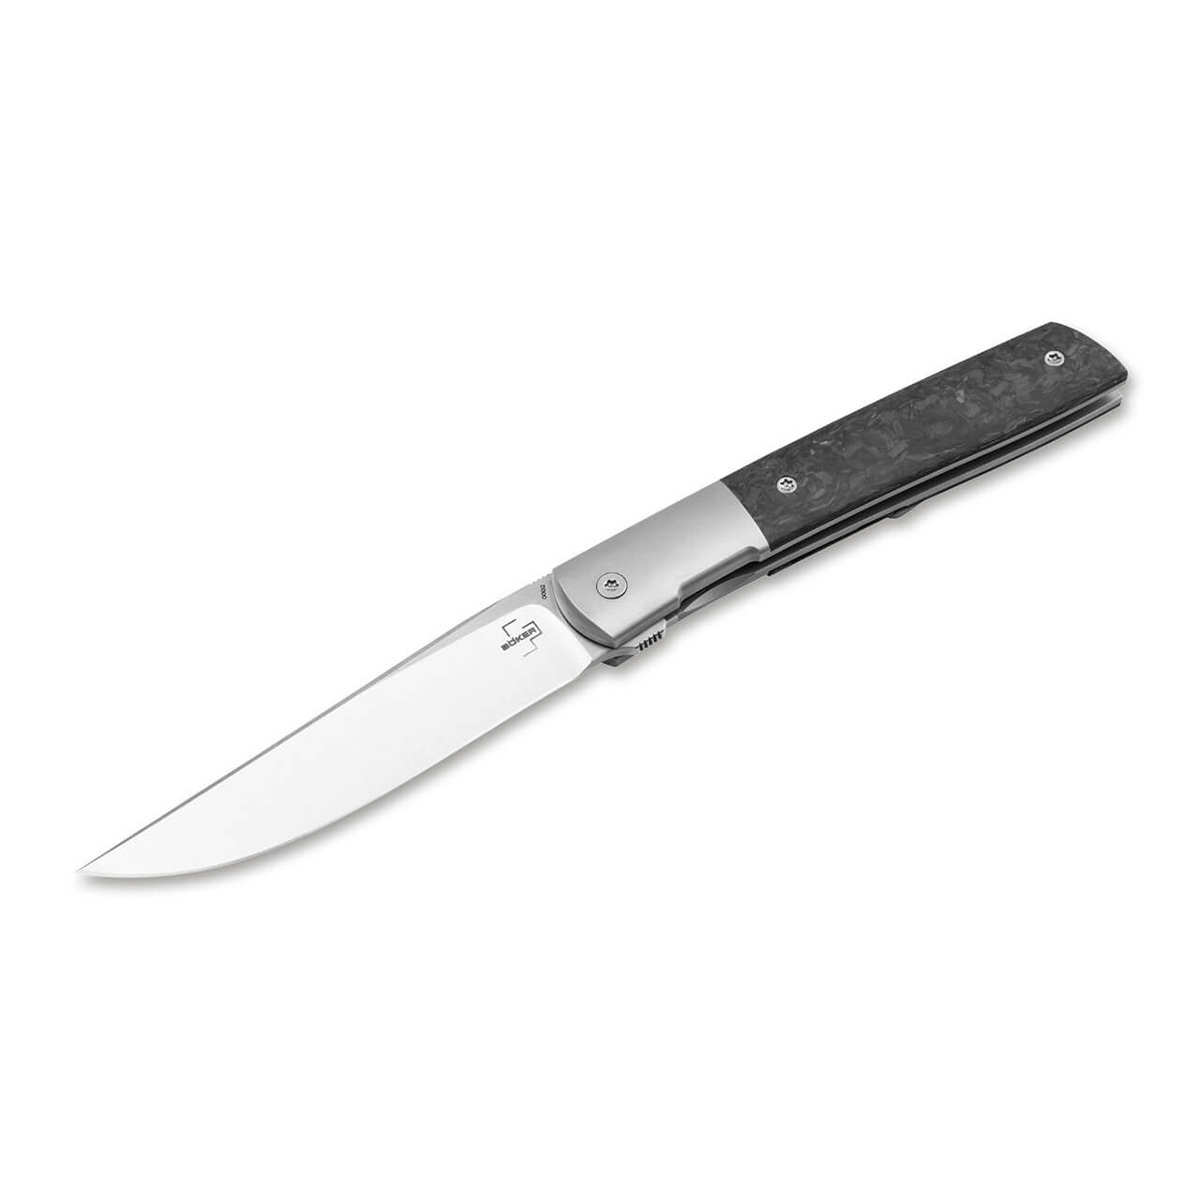 Складной нож Boker Urban Trapper Premium CF, сталь M390, рукоять титан/Carbon нож складной al mar eagle heavy duty™ сталь vg 10 talon рукоять стеклотекстолит g 10